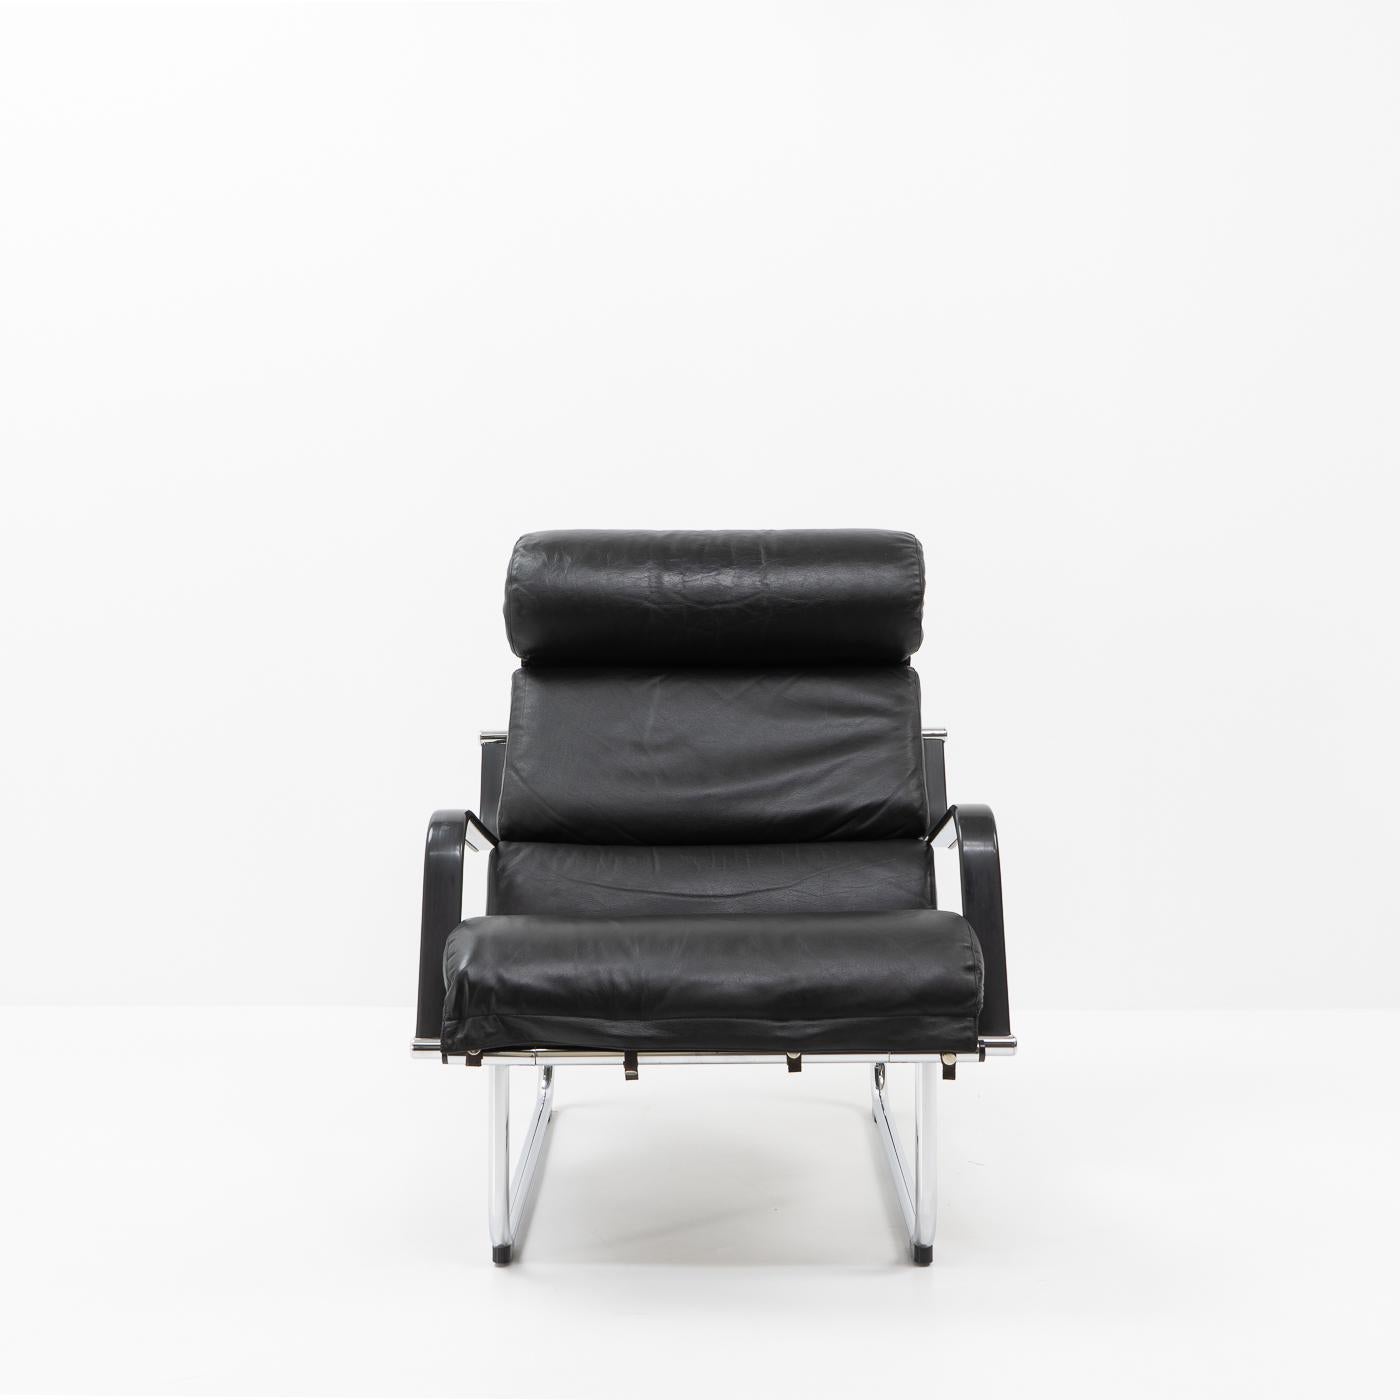 Remmi Lounge Stuhl von Yrjö Kukkapuro, entworfen in den späten 1960er Jahren:

Yrjö Kukkapuro ist ein finnischer Möbeldesigner und Architekt, der für seine innovativen und funktionalen Entwürfe bekannt ist. Er hat die modernistische Designbewegung